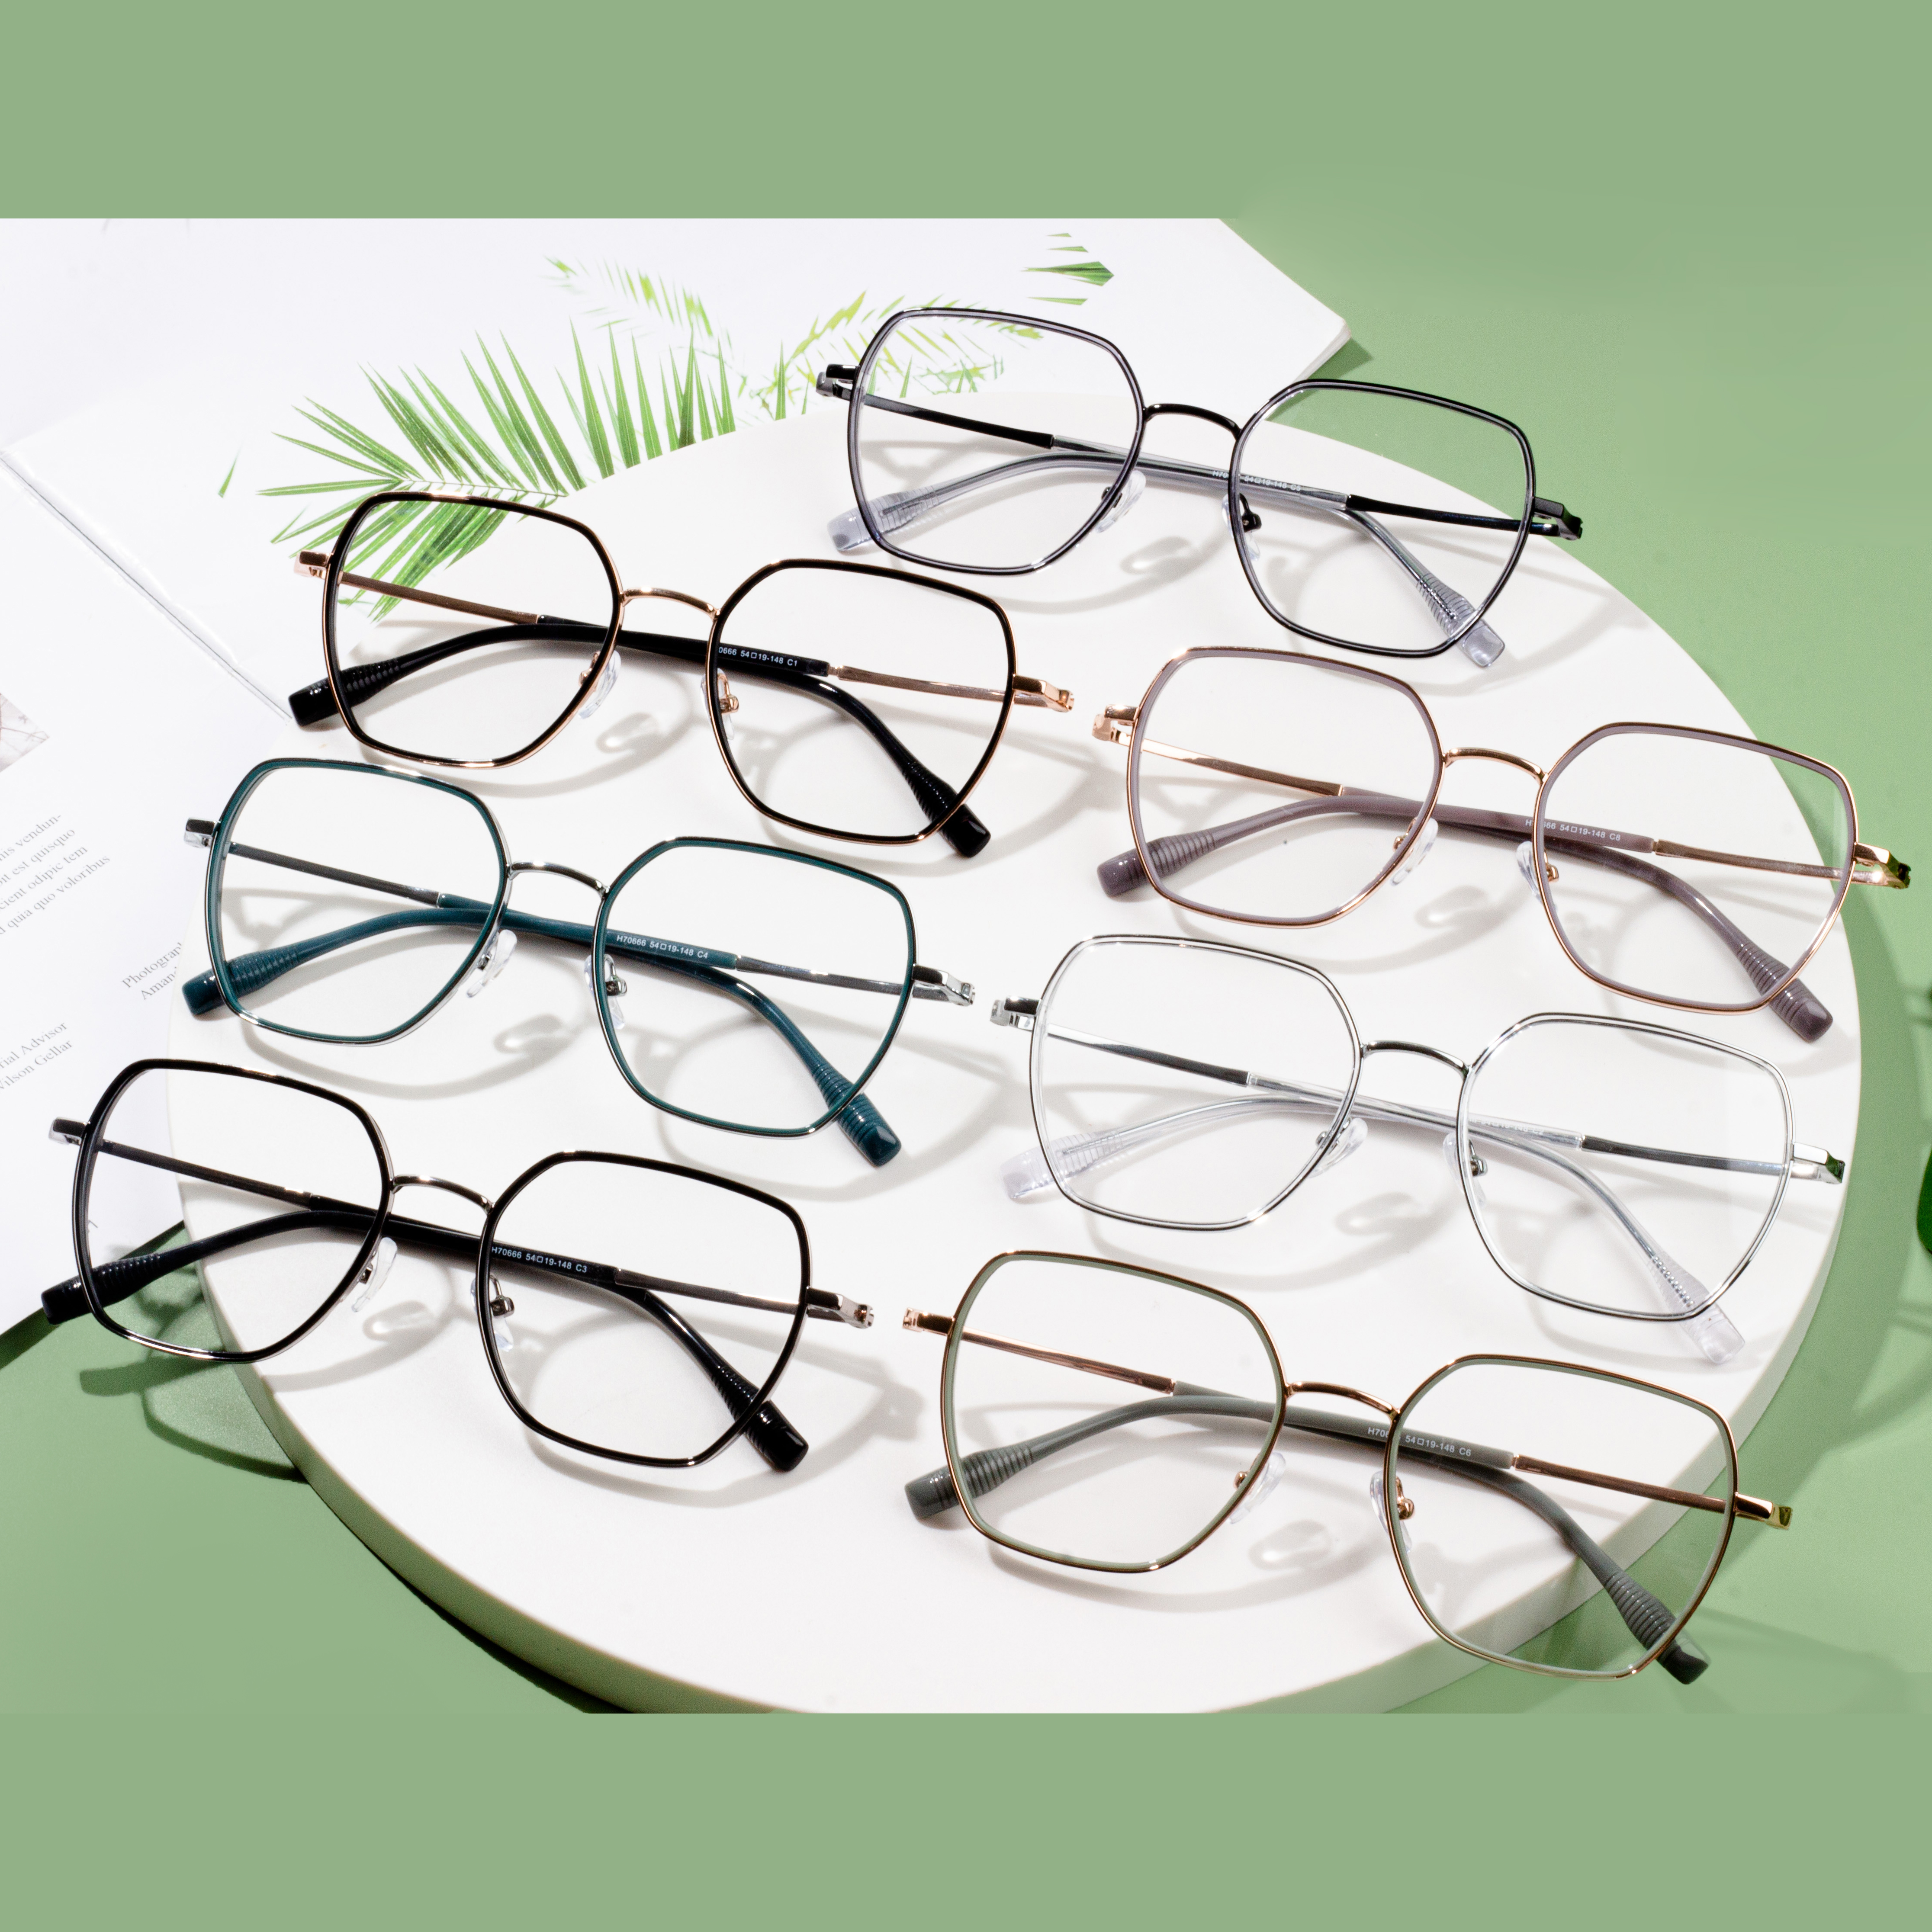 veleprodaja proizvođača optičkih okvira za naočale